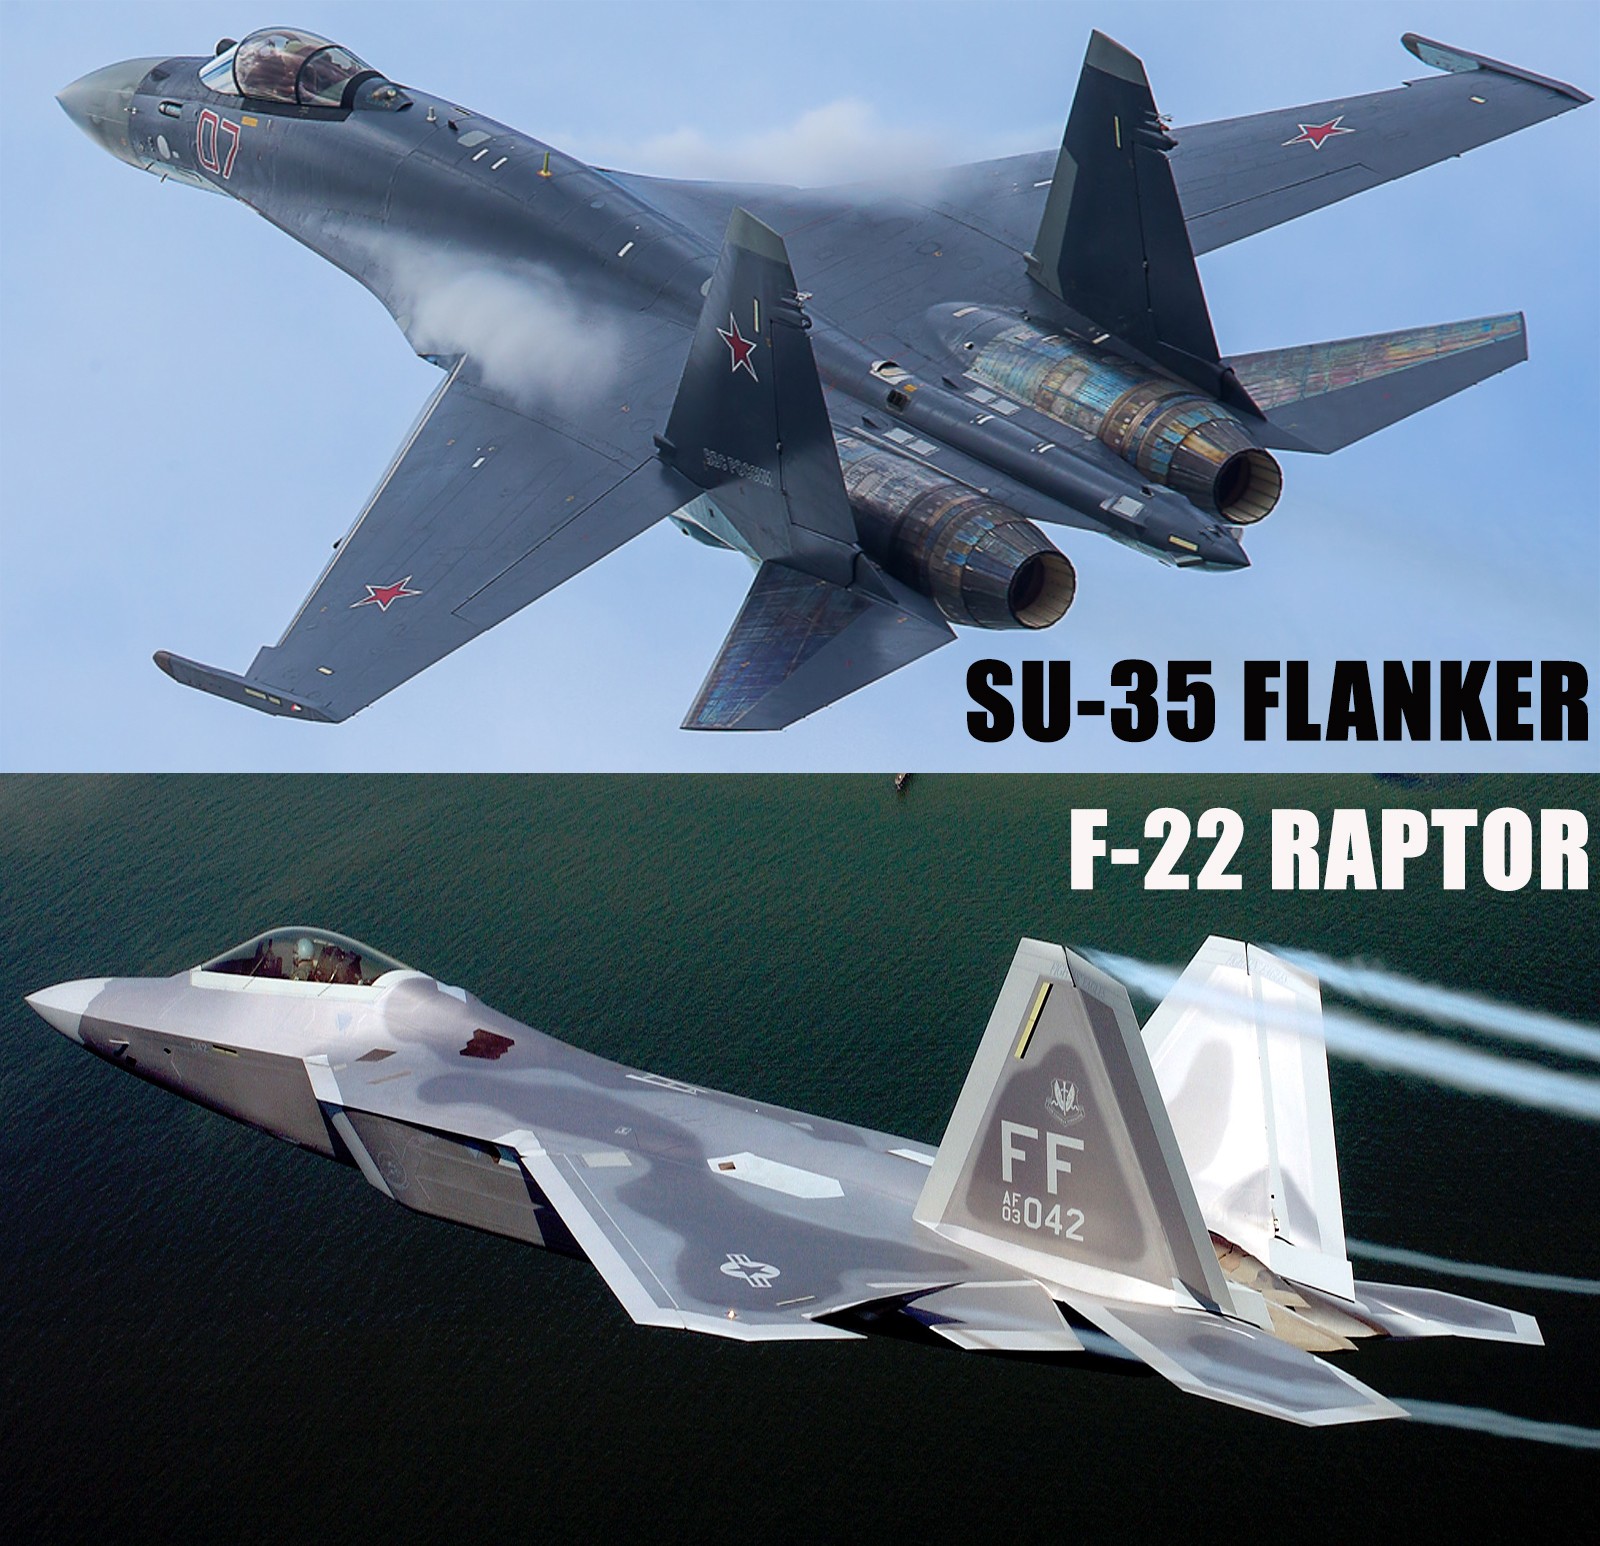 Comparison of Su-35 Flanker-E VS F-22 Raptor